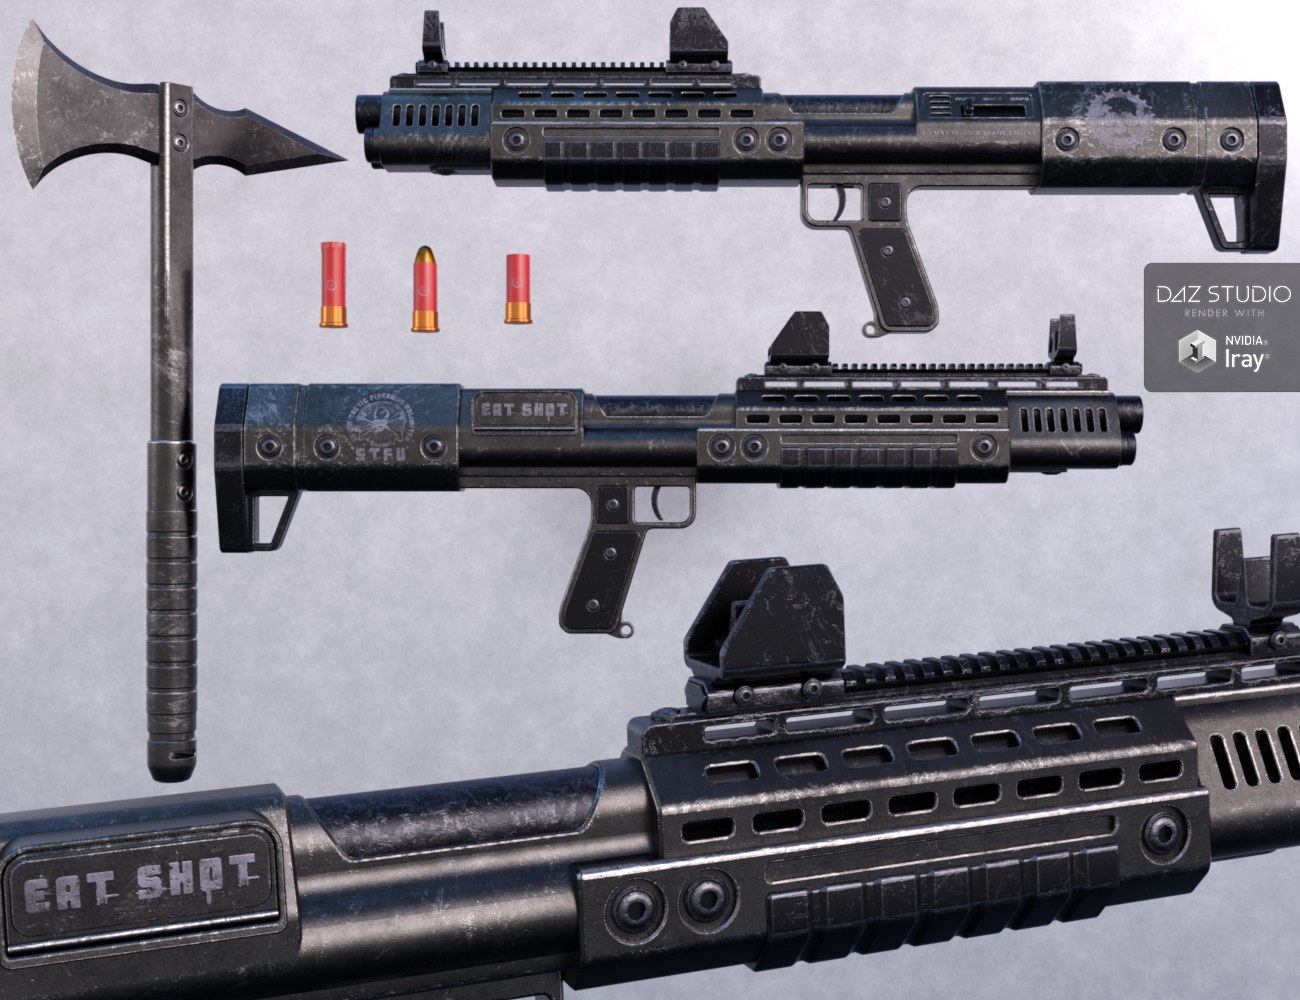 CAATS-330 Tactical Shotgun Set by: Nightshift3D, 3D Models by Daz 3D